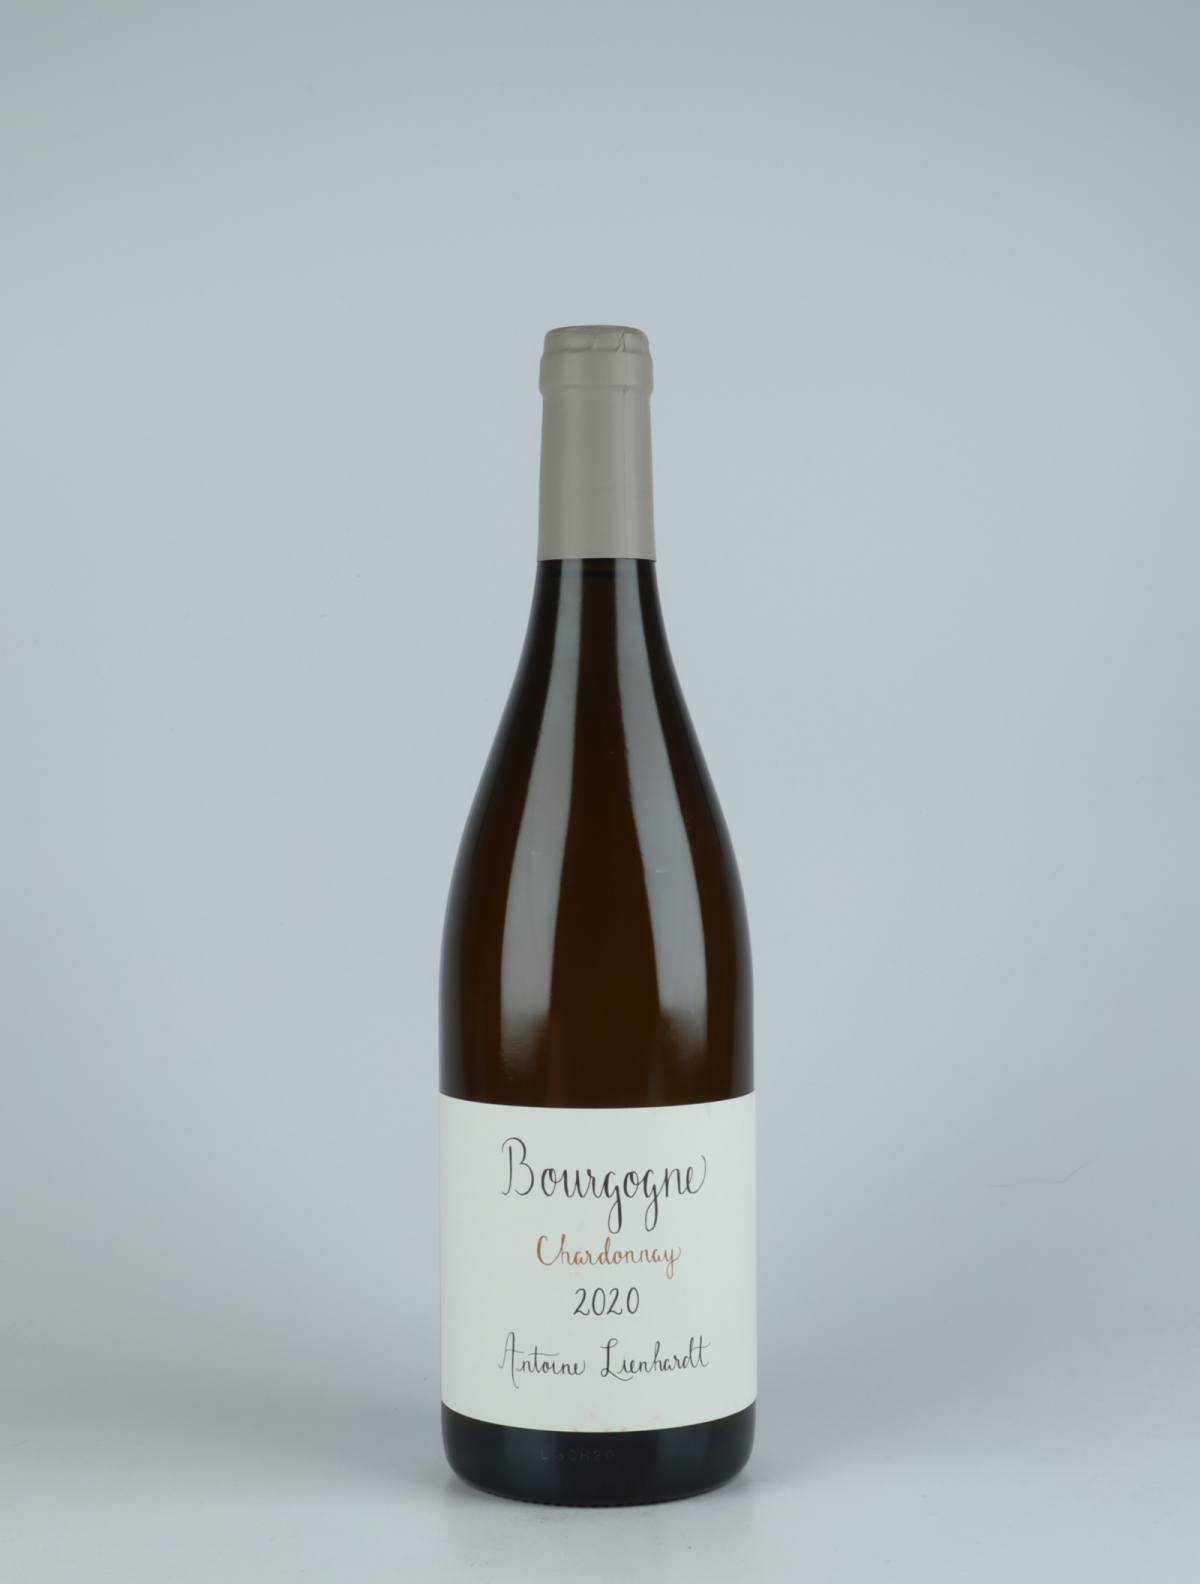 A bottle 2020 Bourgogne Blanc White wine from Antoine Lienhardt, Burgundy in France